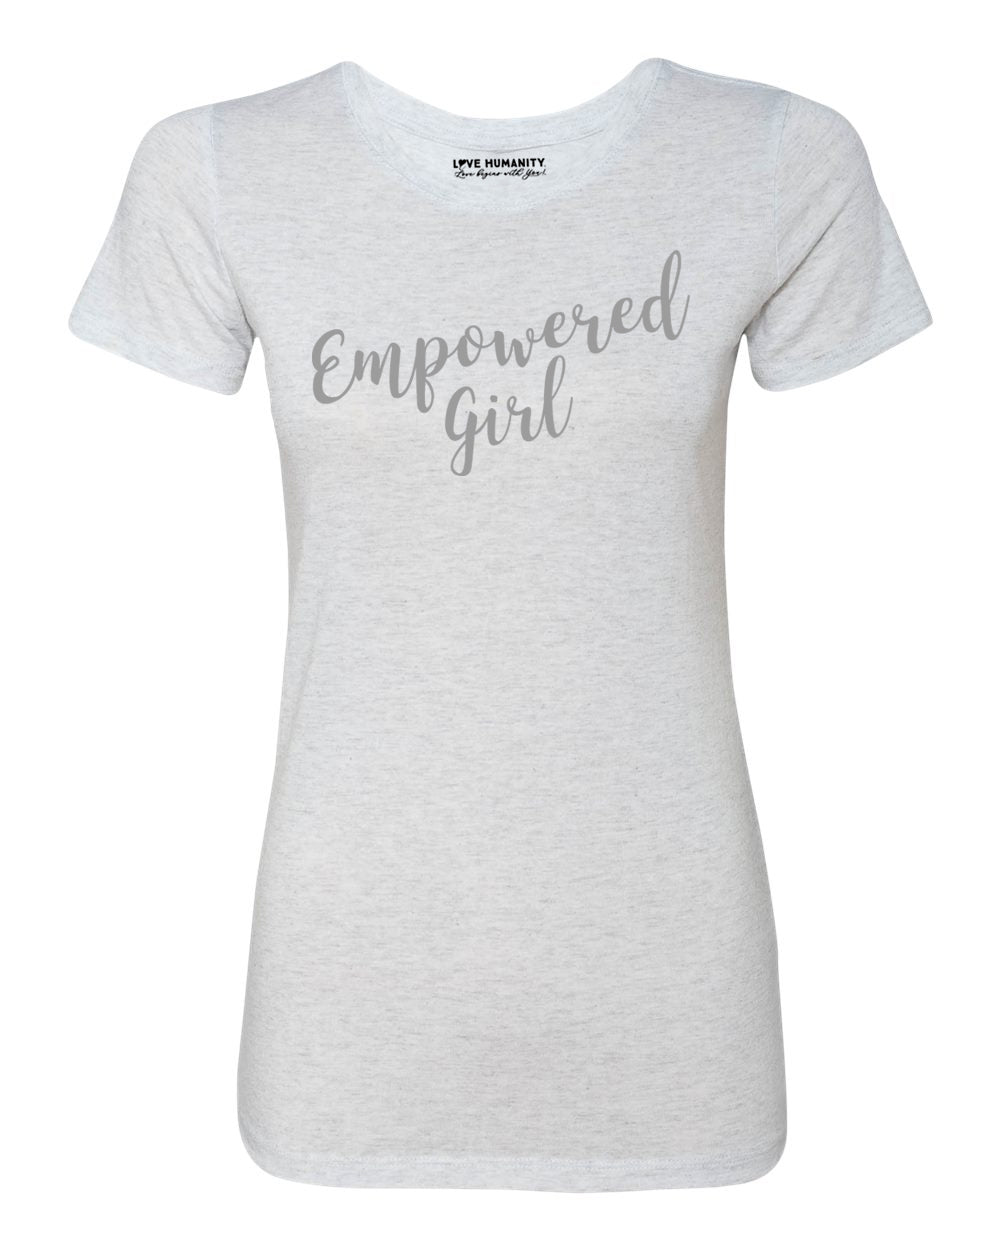 Empowered Girl™ Women's Premium TriBlend T